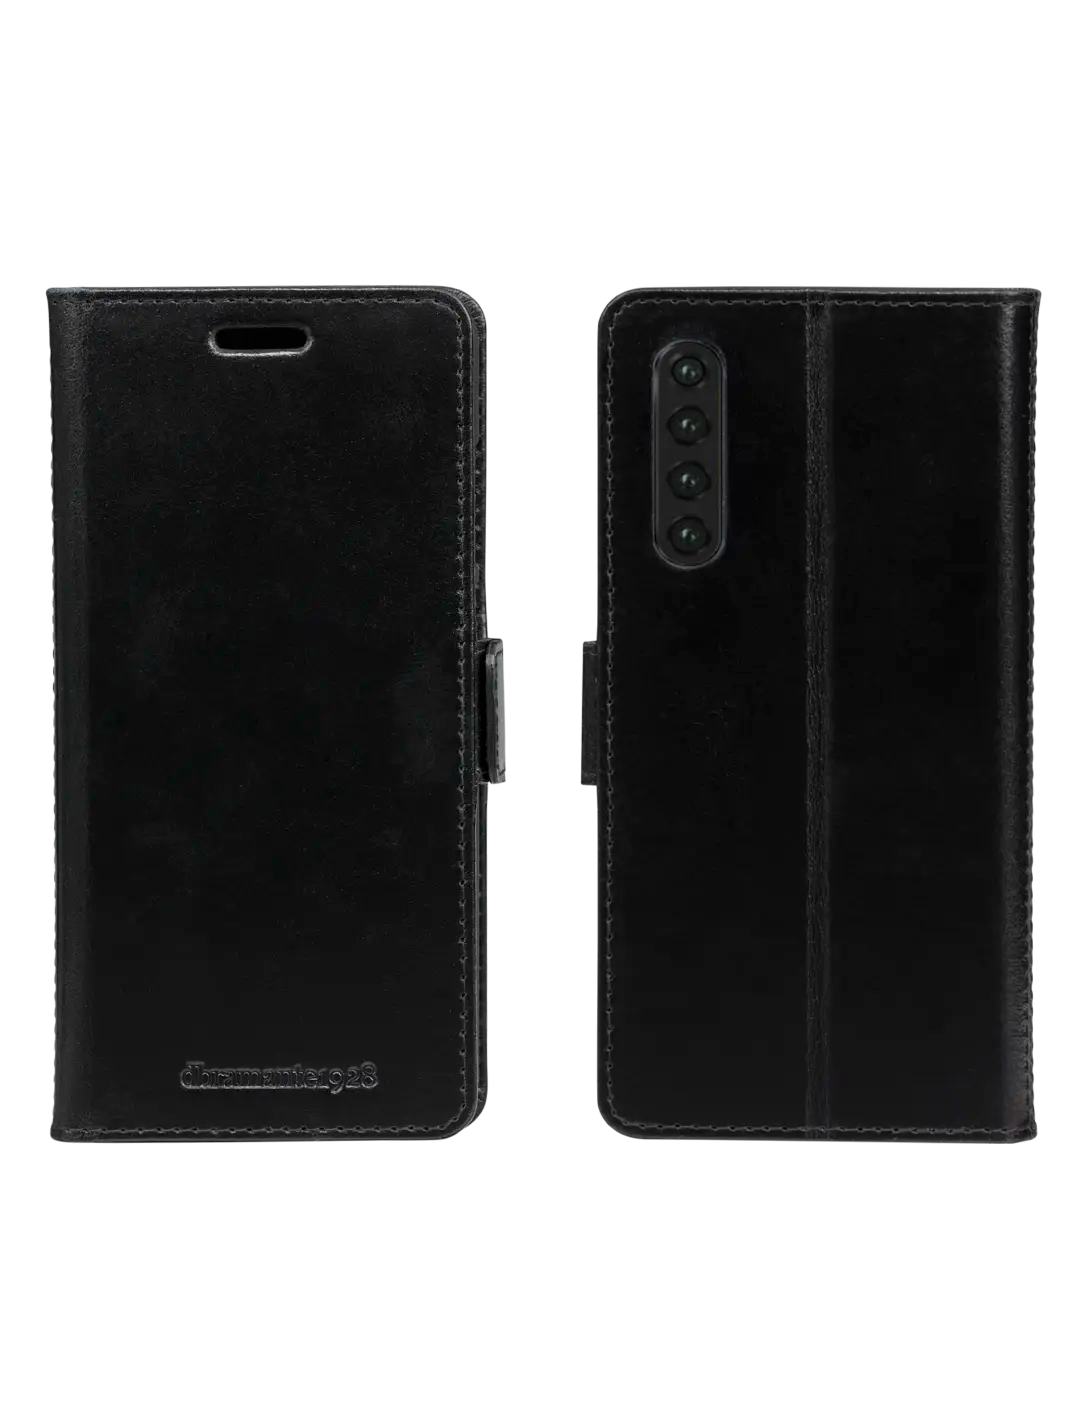 Copenhagen 1. Gen Black Huawei P30 Phone Cases